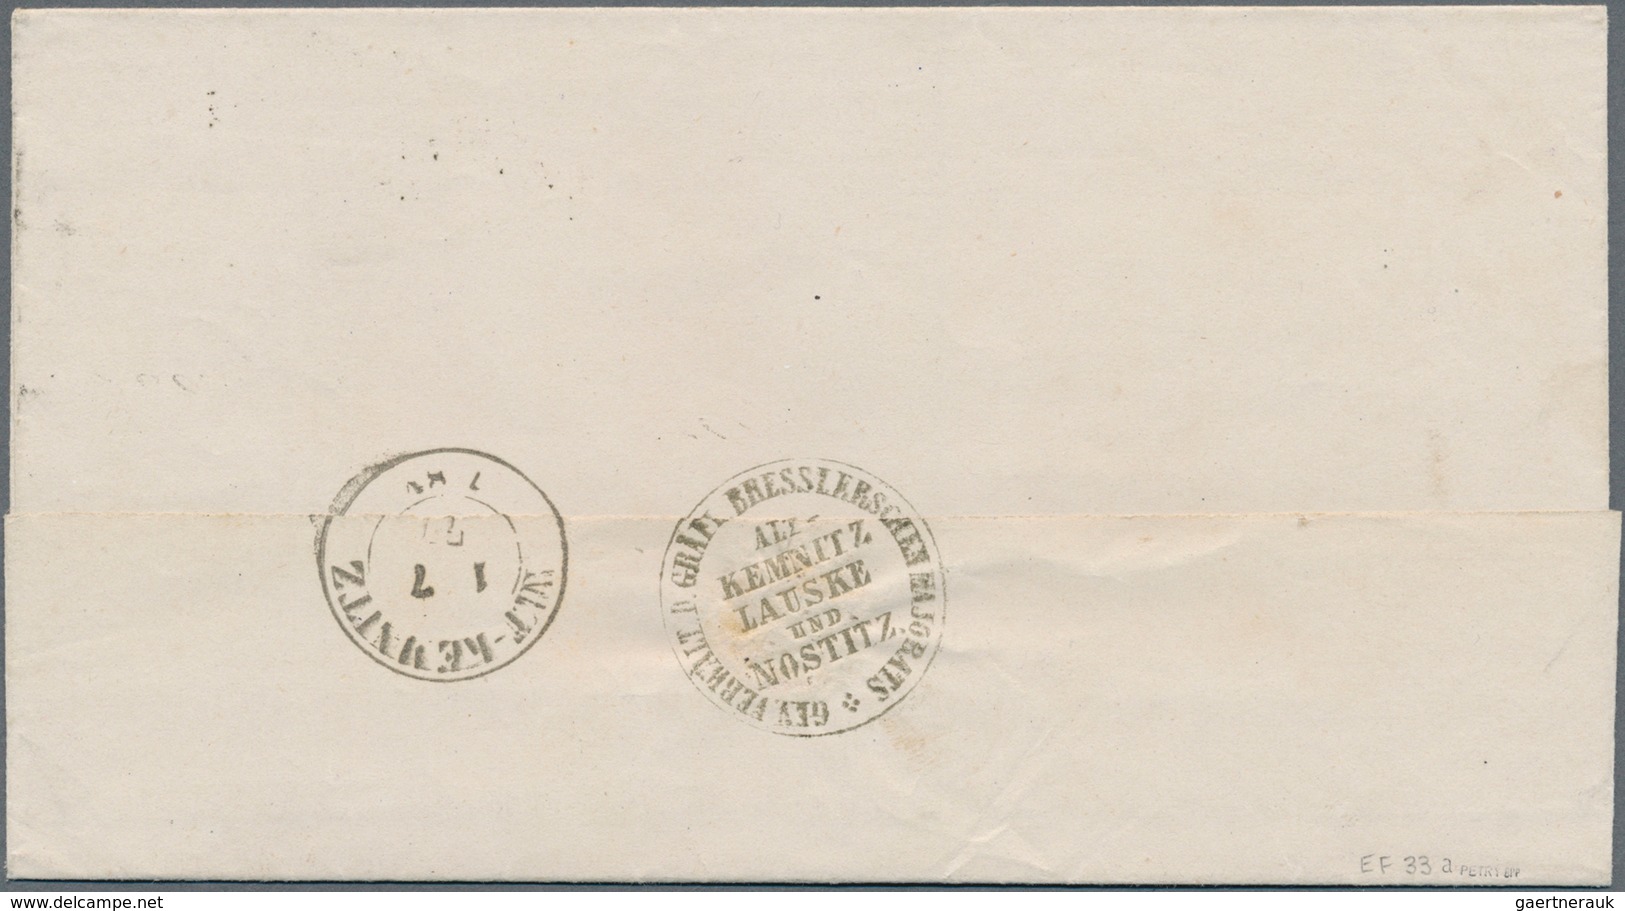 17885A Deutsches Reich - Brustschild: 1875, Sechs Brustschild-Marken ein Brief und eine GA mit Reichspost-N